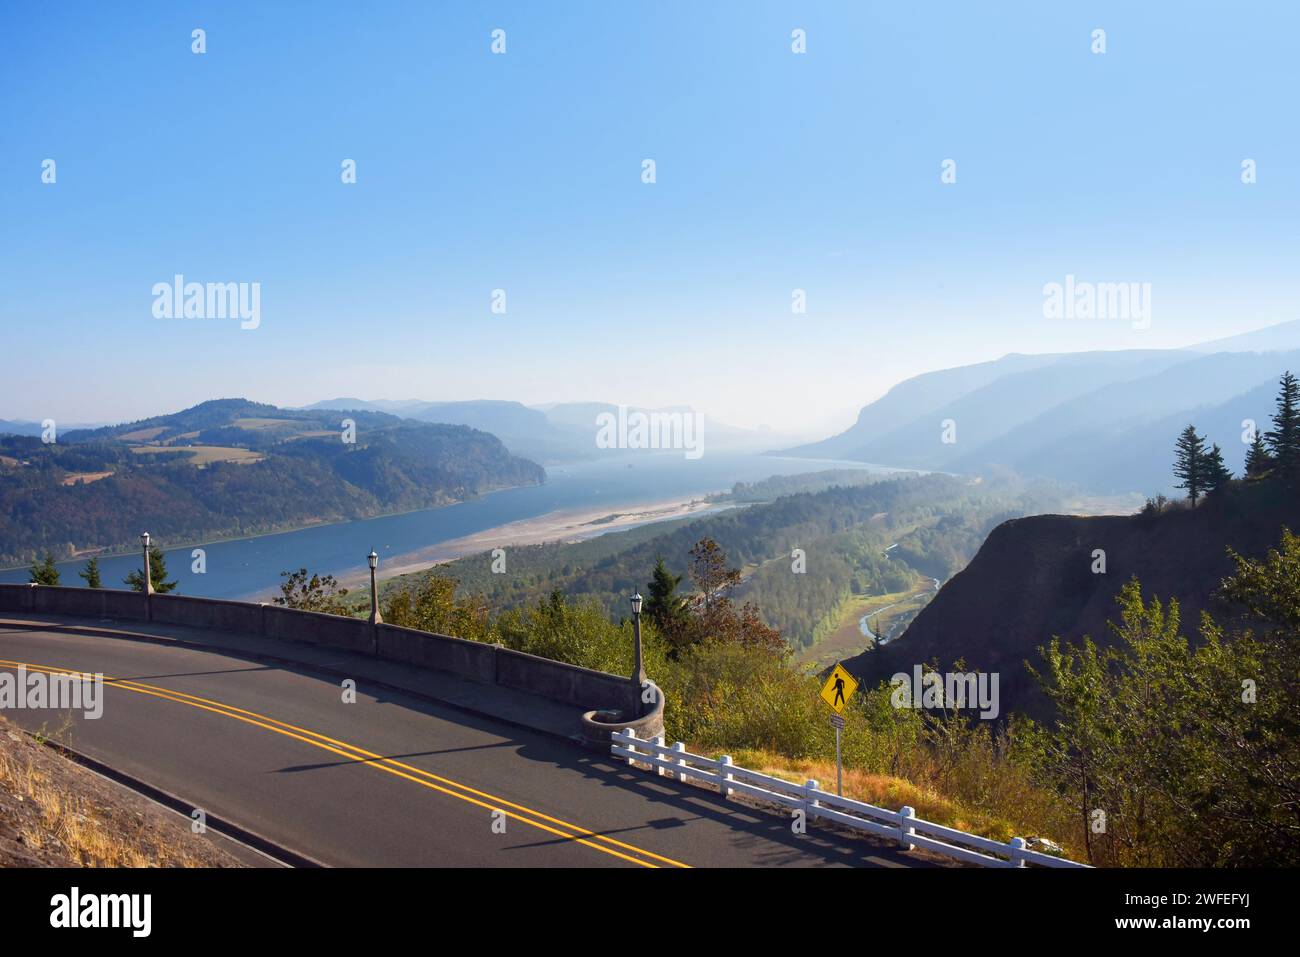 La carretera y la barandilla de piedra curva revelan una vista panorámica de la garganta del río Columbia, vista desde el Observatorio Vista House en Oregón. Foto de stock